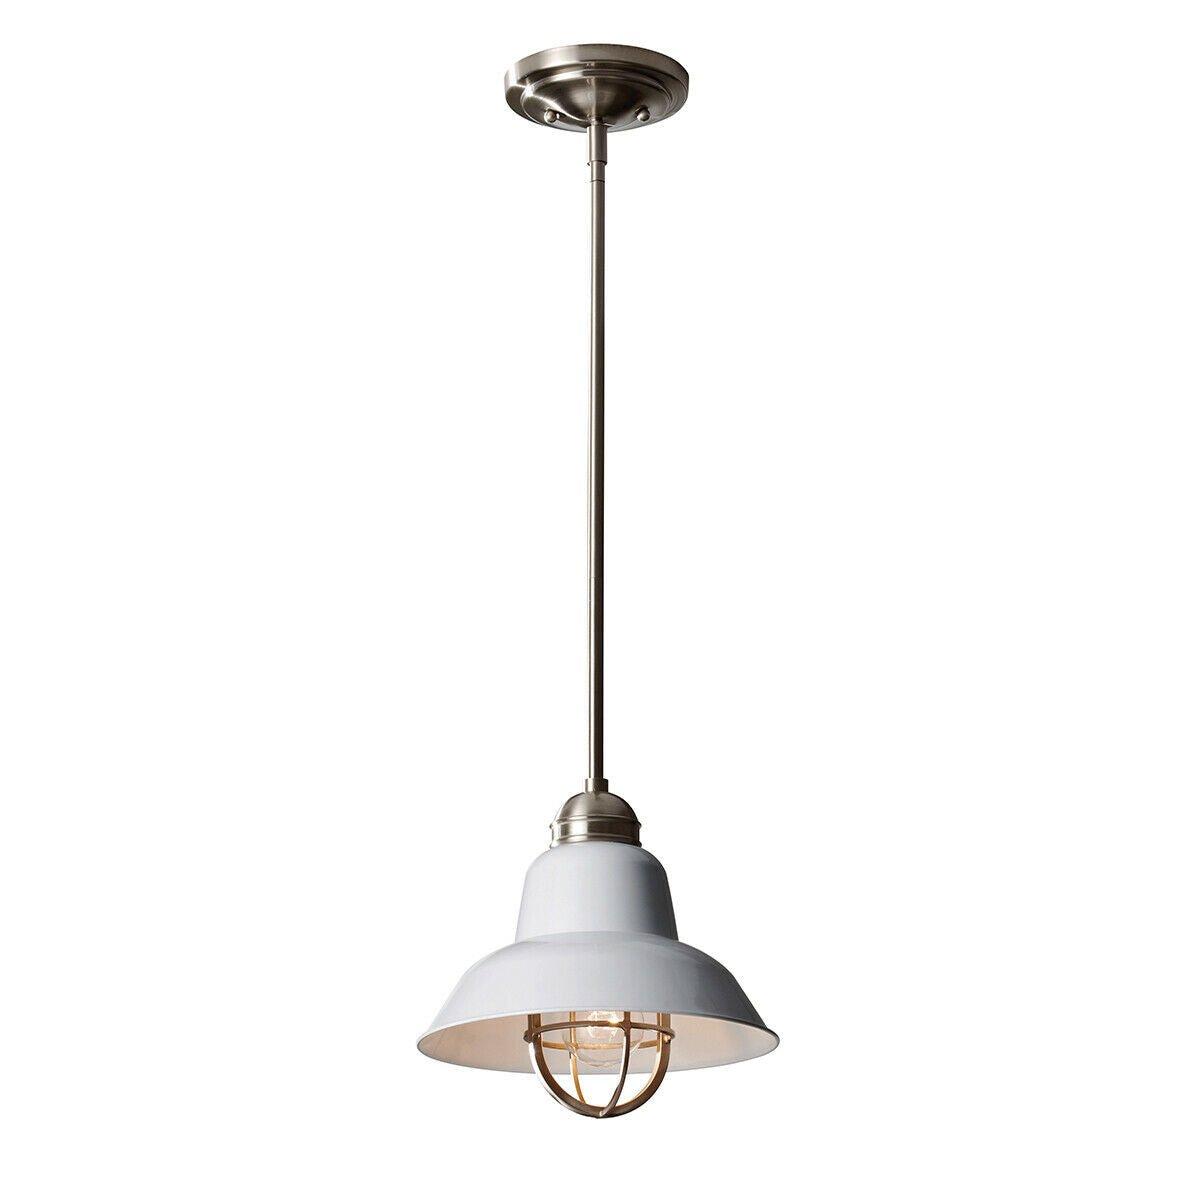 1 Bulb Ceiling Pendant Light Fitting Brushed Steel Glossy White LED E27 60W